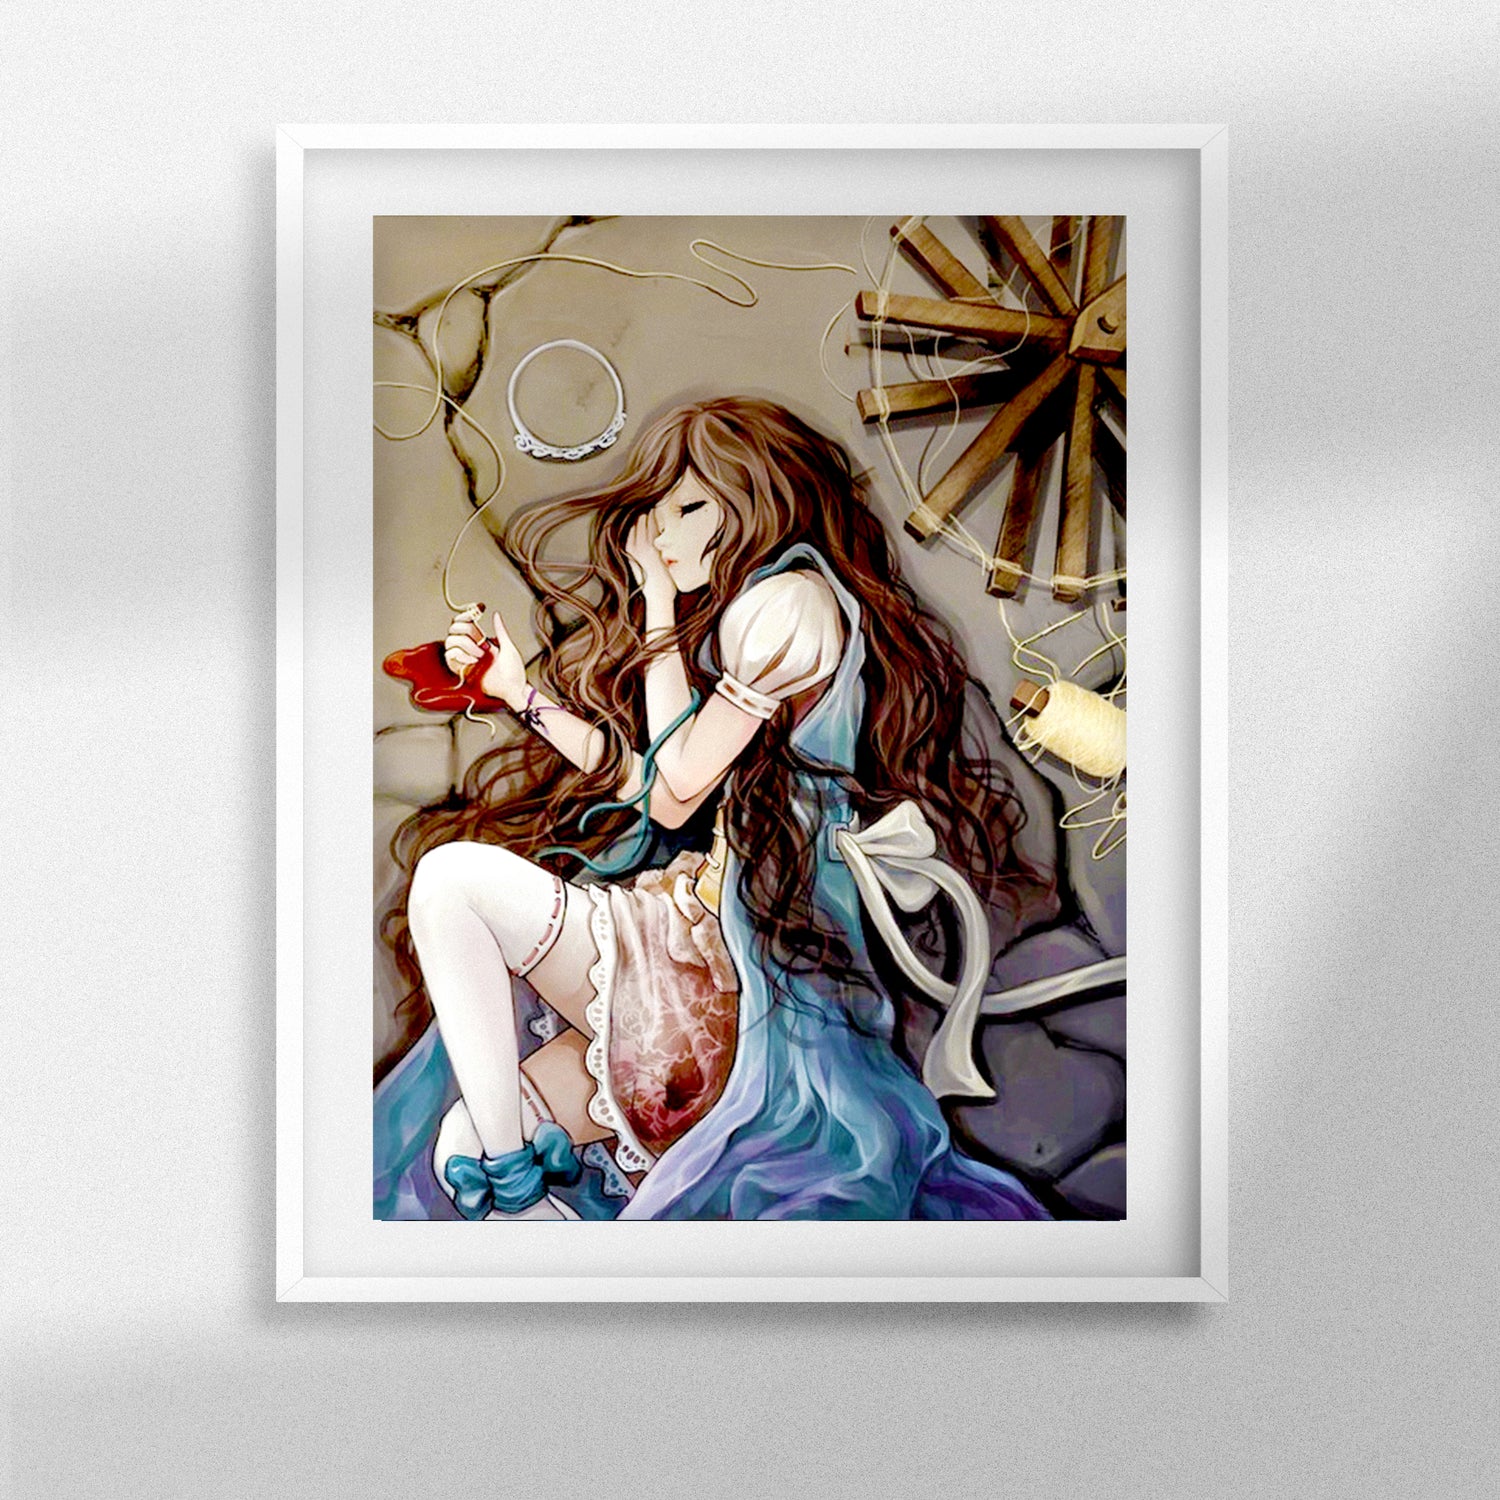 Alice in Wonderland Diamond Painting : r/diamondpainting